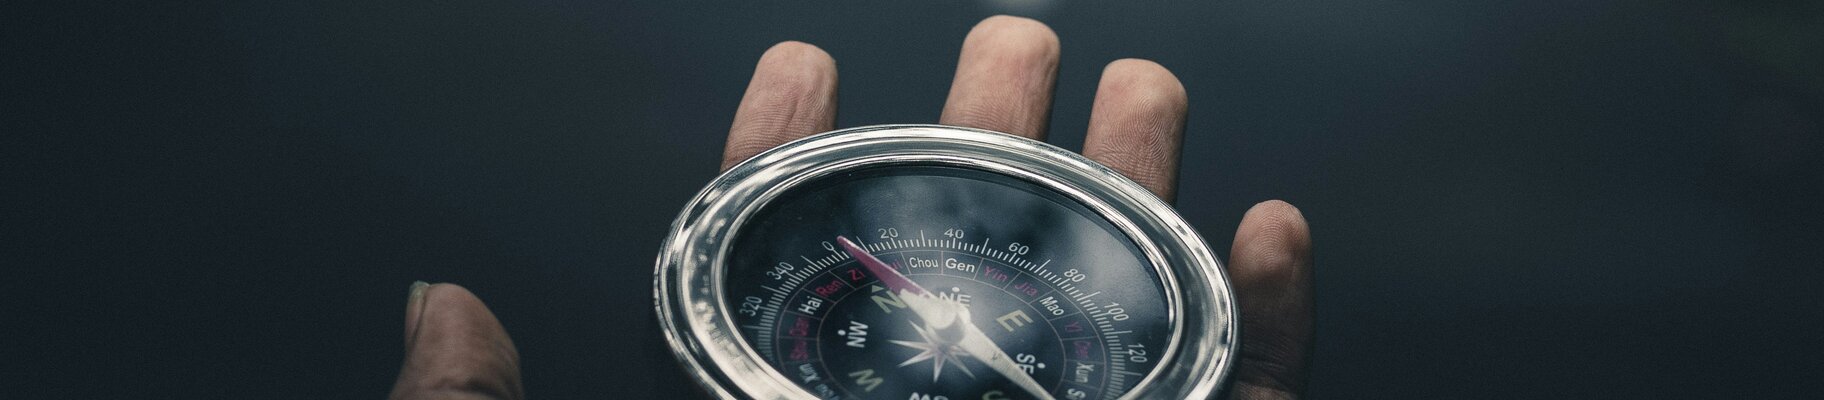 Kompass in einer Hand